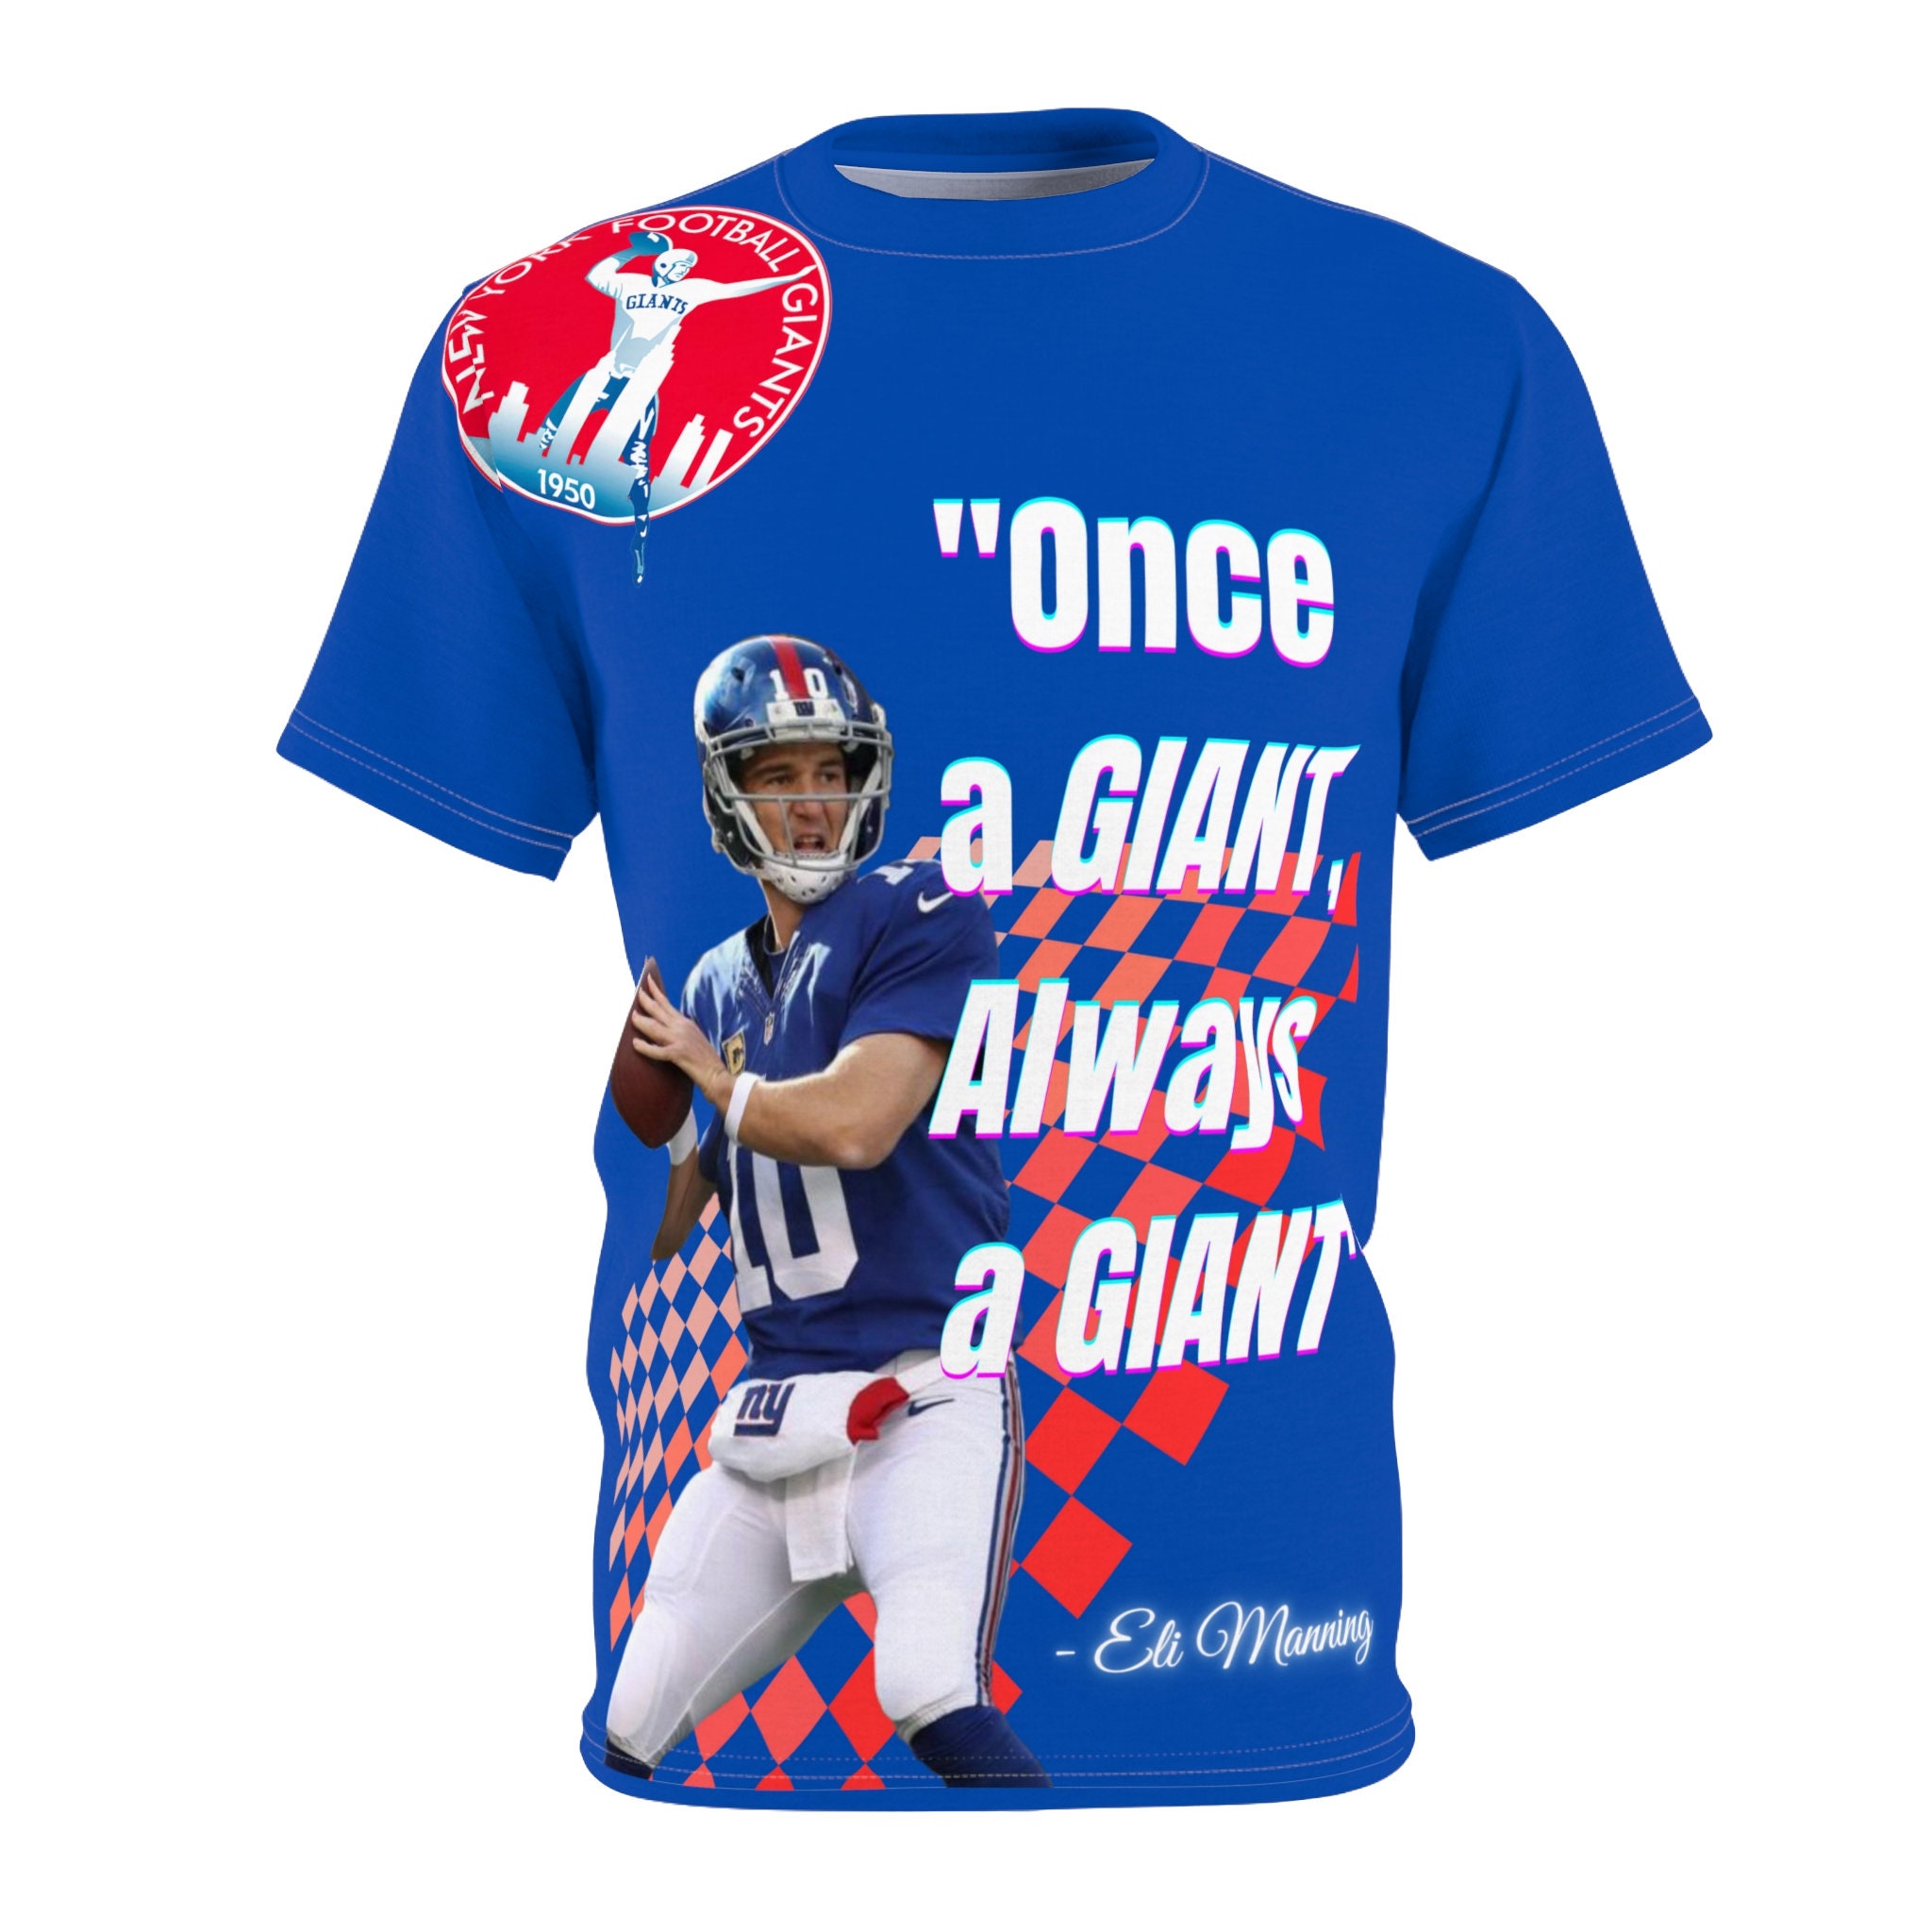 Easy E Retro Sports Graphic Tee | Funny NY Giants Eli Manning T-Shirt Royal / Medium